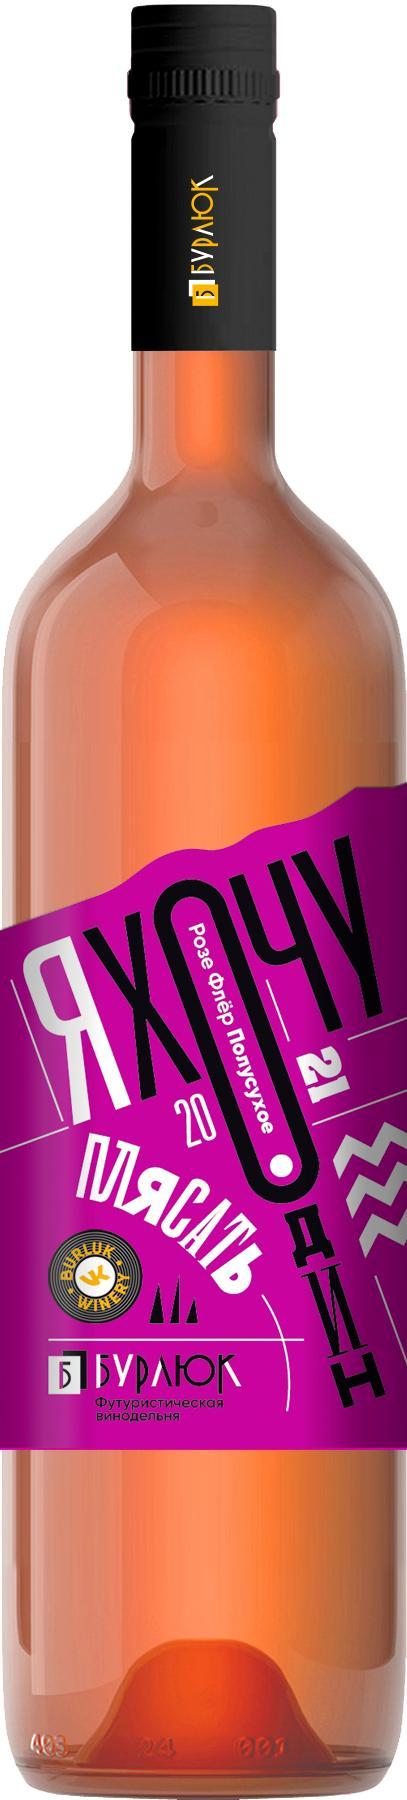 Вино серии «Я хочу один плясать» Розе флёр розовое полусухое 750мл, Винодельня Бурлюк